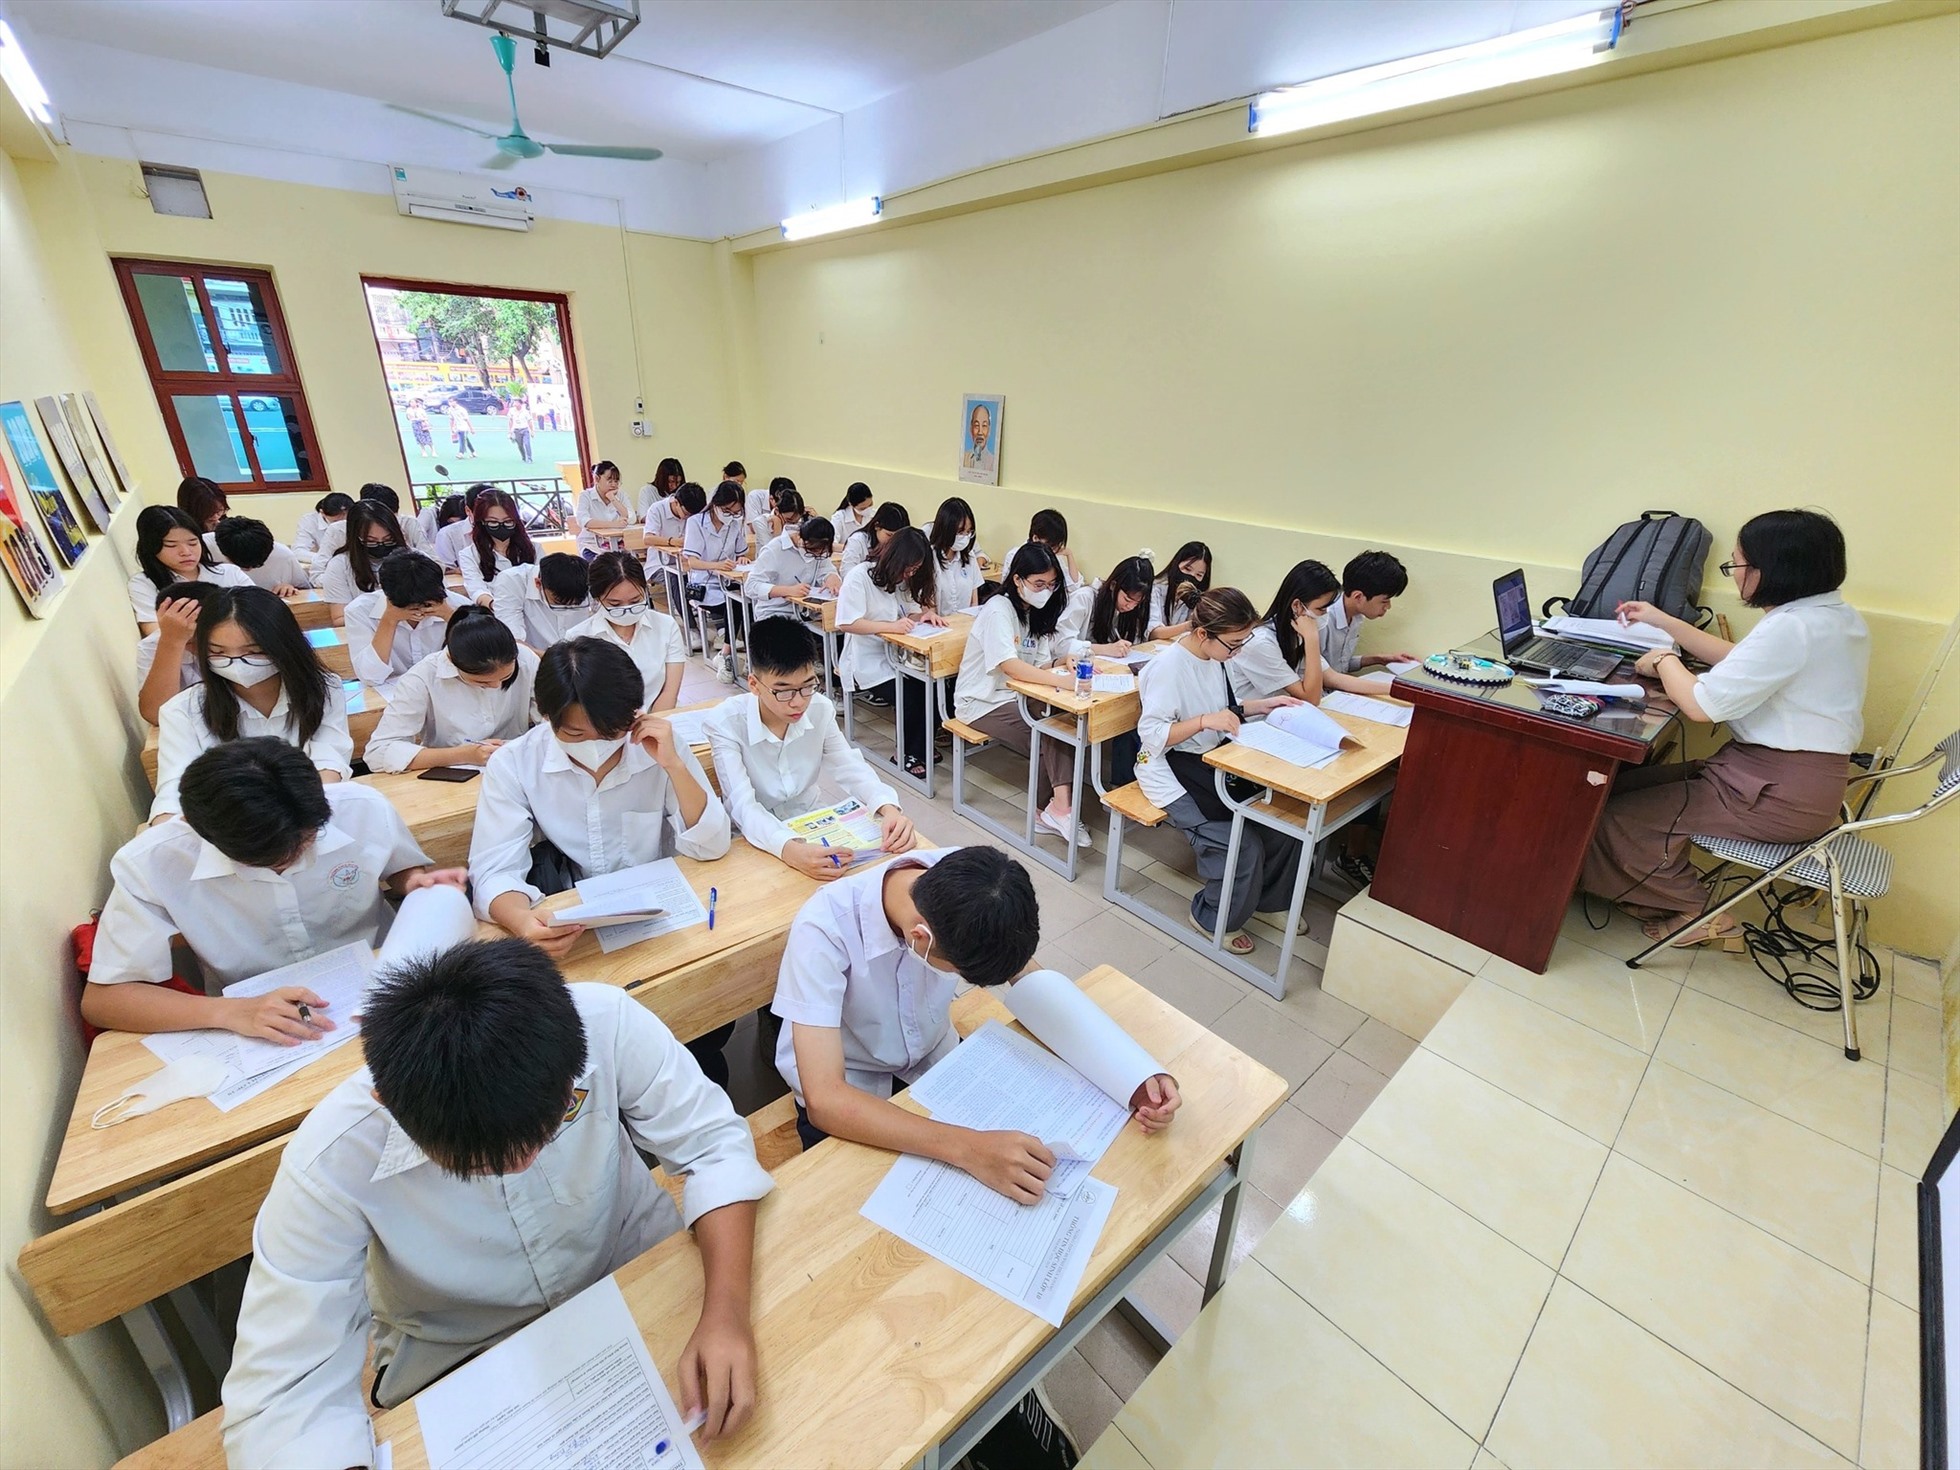 Học sinh khối lớp 10 Trường THPT Huỳnh Thúc Kháng (Thanh Xuân, Hà Nội) trong ngày tựu trường. Ảnh: Nhà trường cung cấp